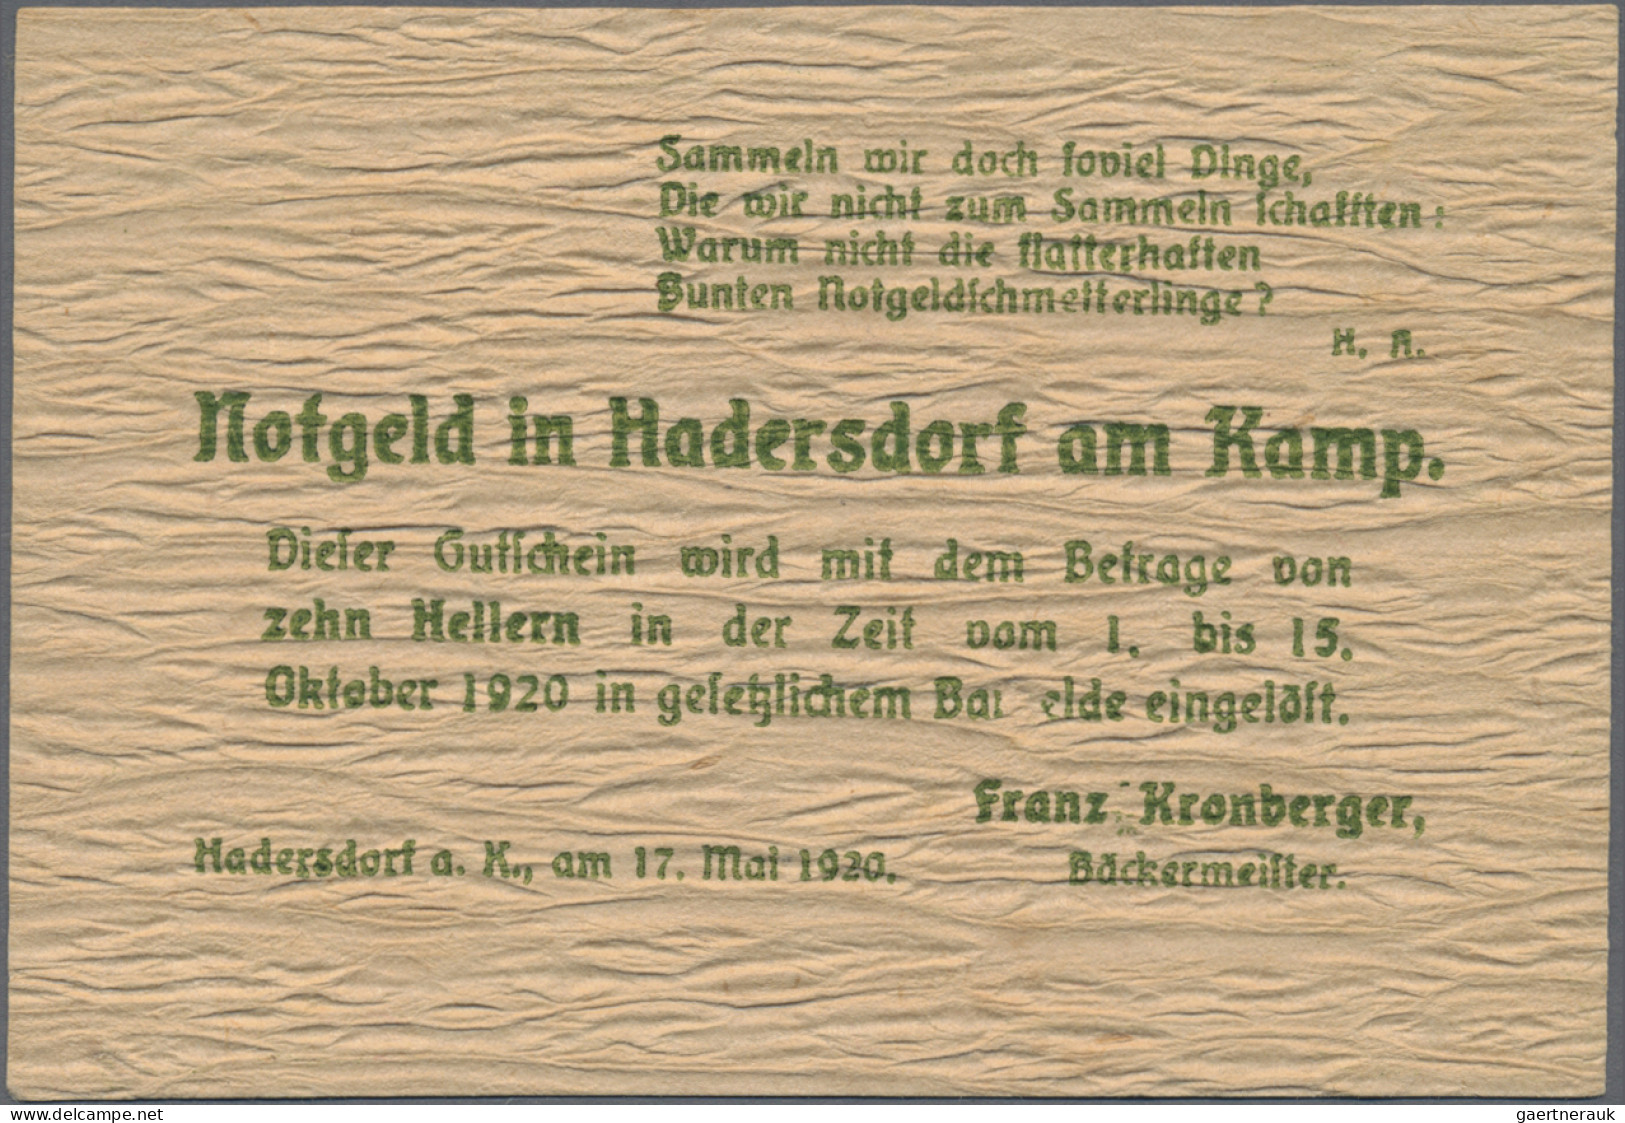 Austria: Hadersdorf Am Kamp, Franz Kronberger, 10, 20, 50 H., 17.5.1920, 10 H. W - Oostenrijk